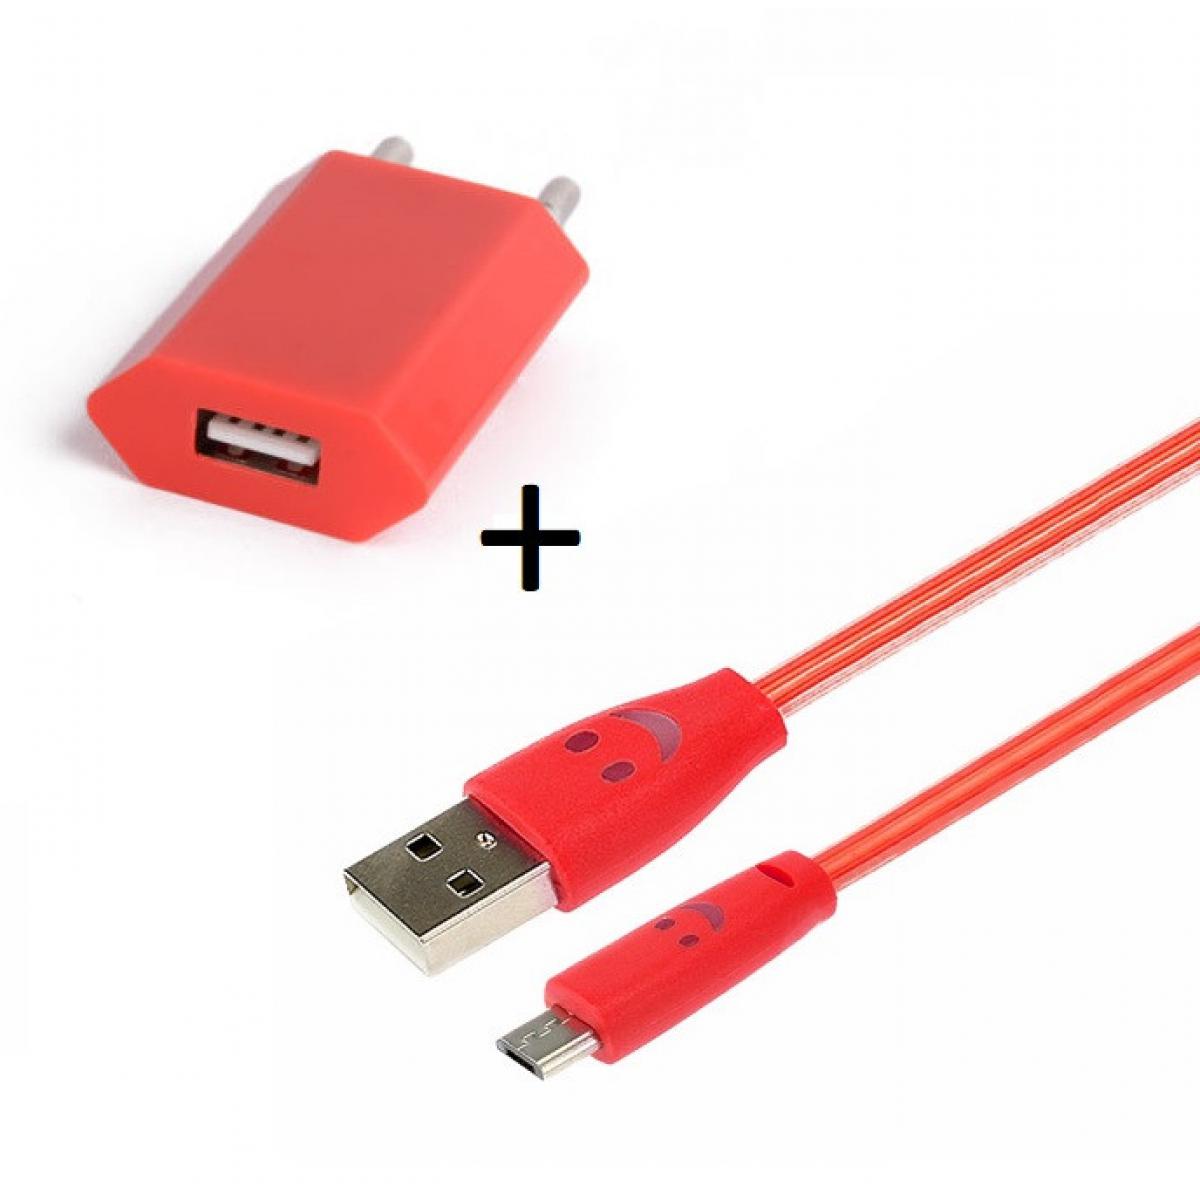 Shot - Pack Chargeur pour JBL GO 2 Smartphone Micro USB (Cable Smiley LED + Prise Secteur USB) Android (ROUGE) - Chargeur secteur téléphone